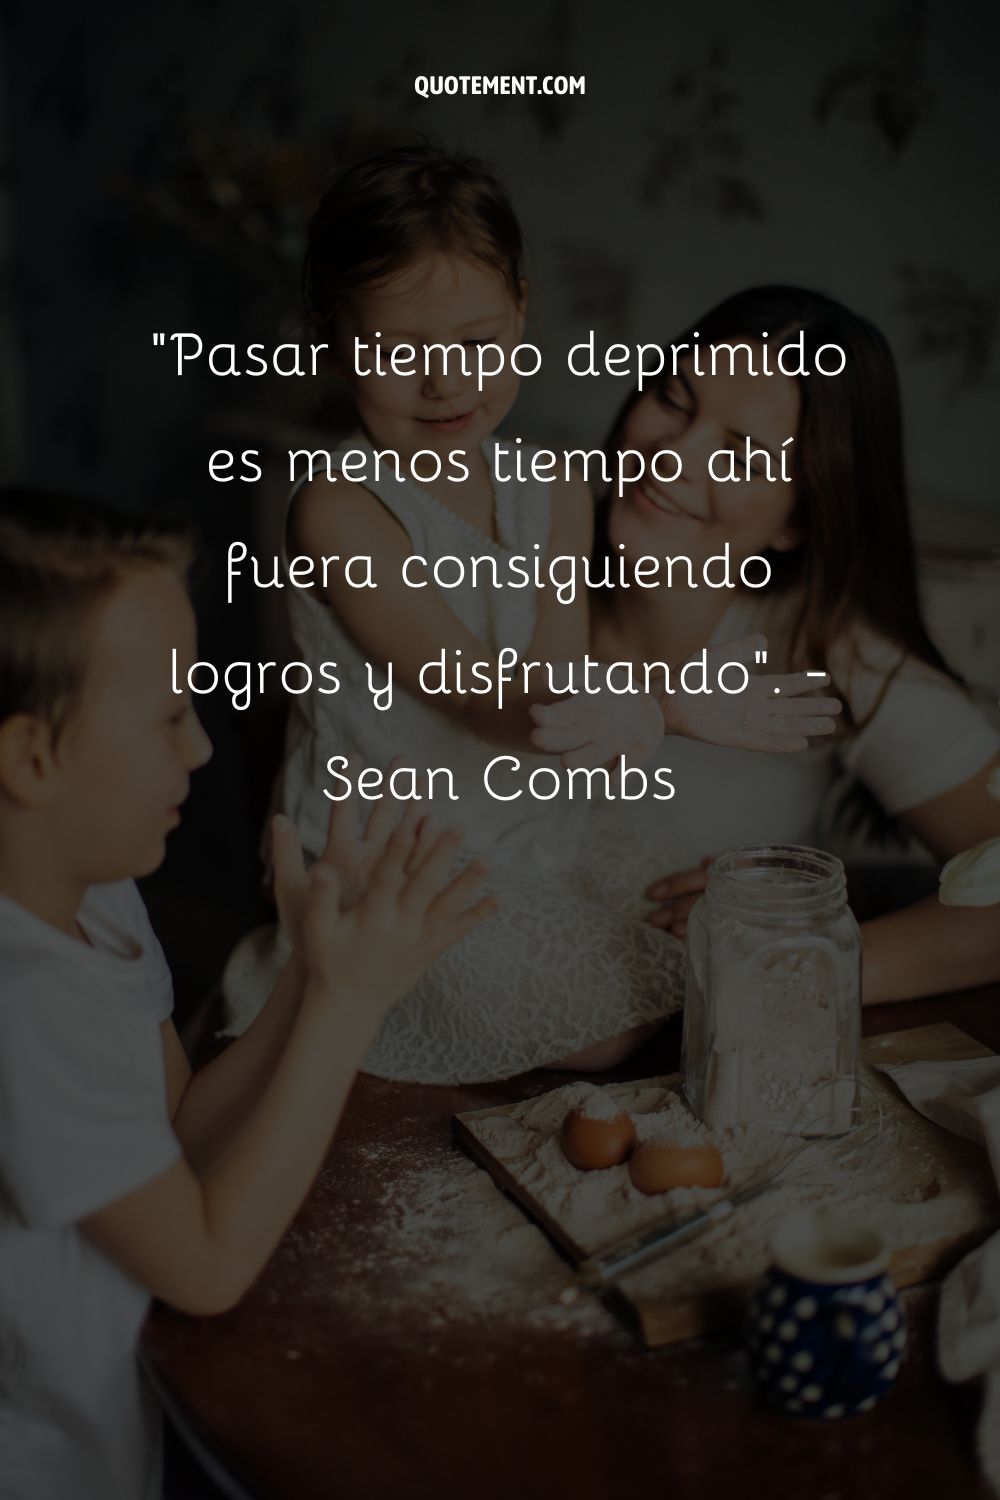 "Pasar tiempo deprimido es menos tiempo ahí fuera consiguiendo logros y disfrutando. - Sean Combs